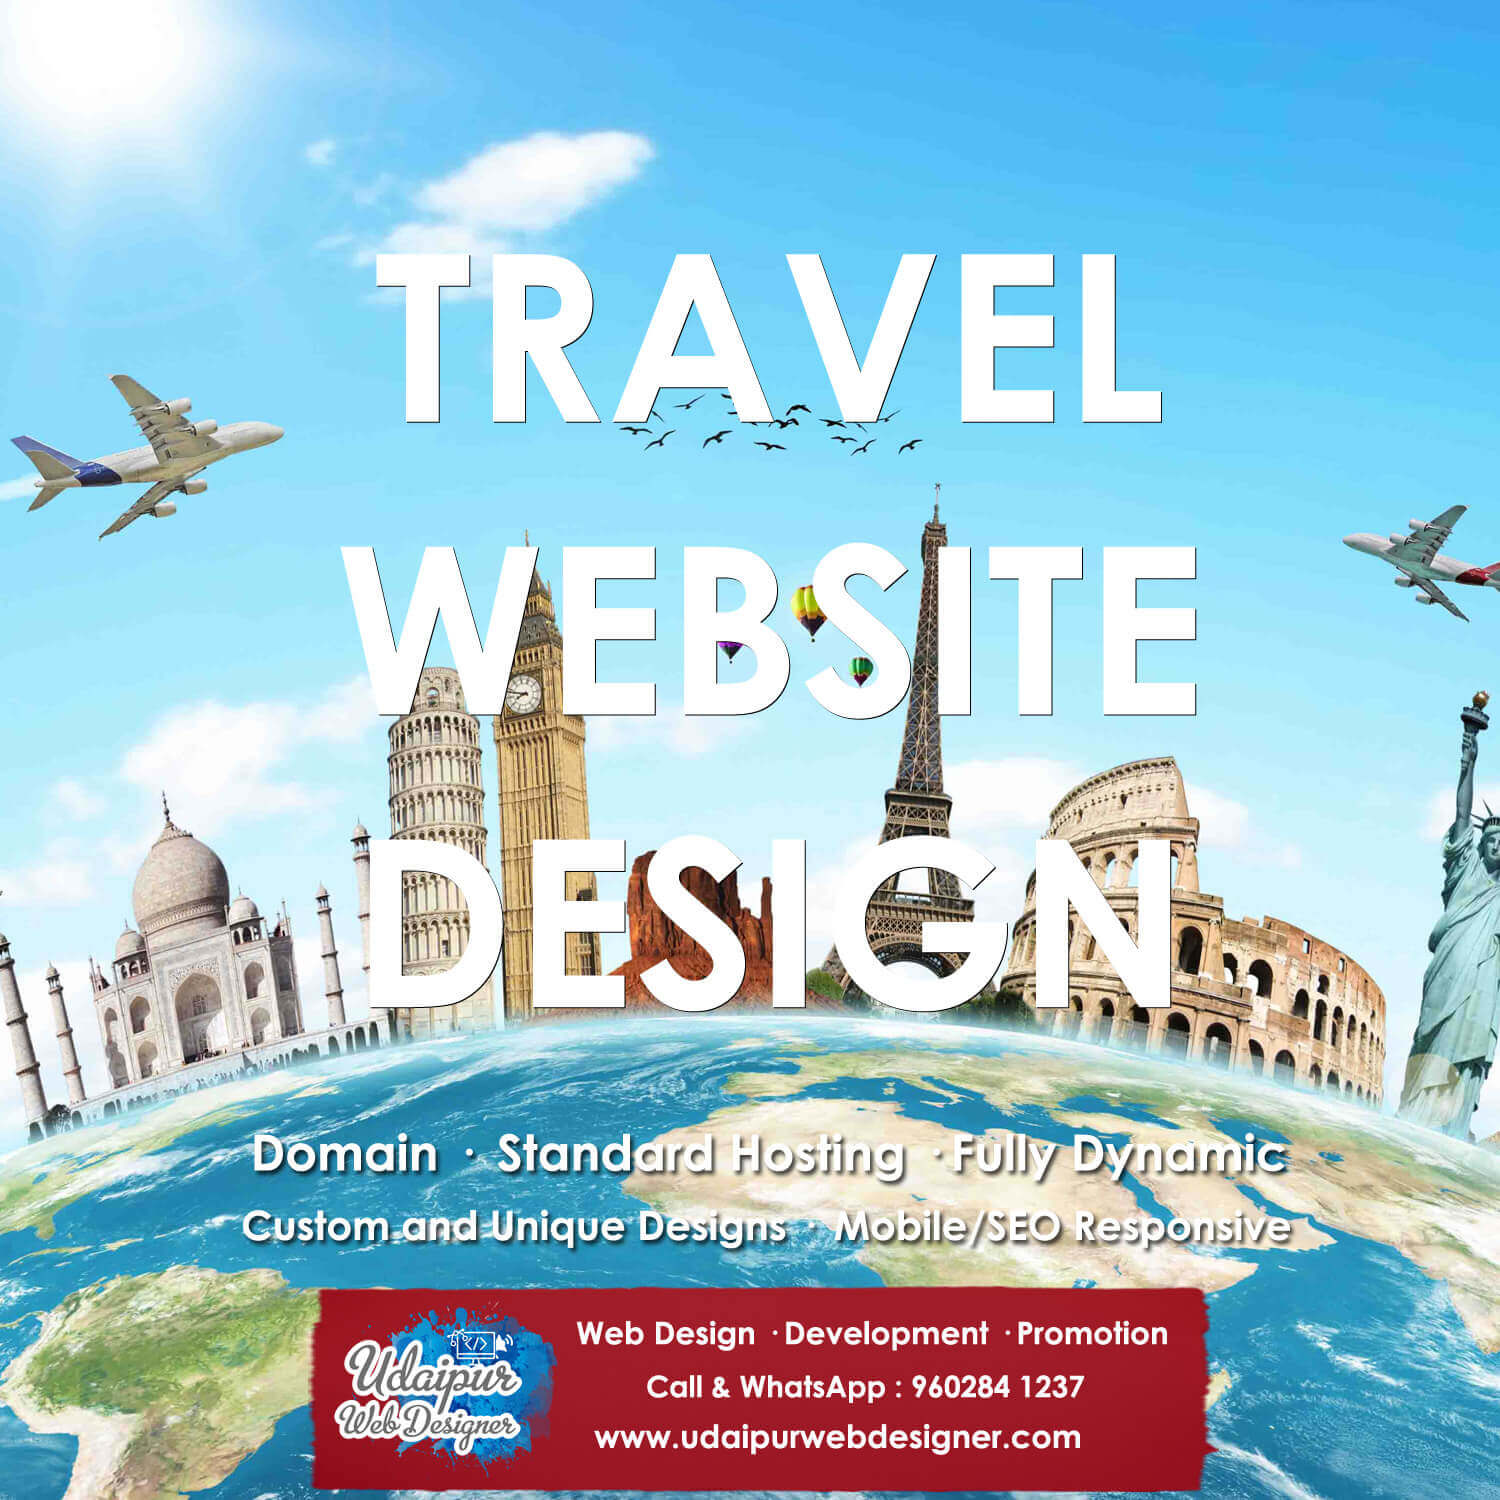 Tour-Travel-Website-Design-India-